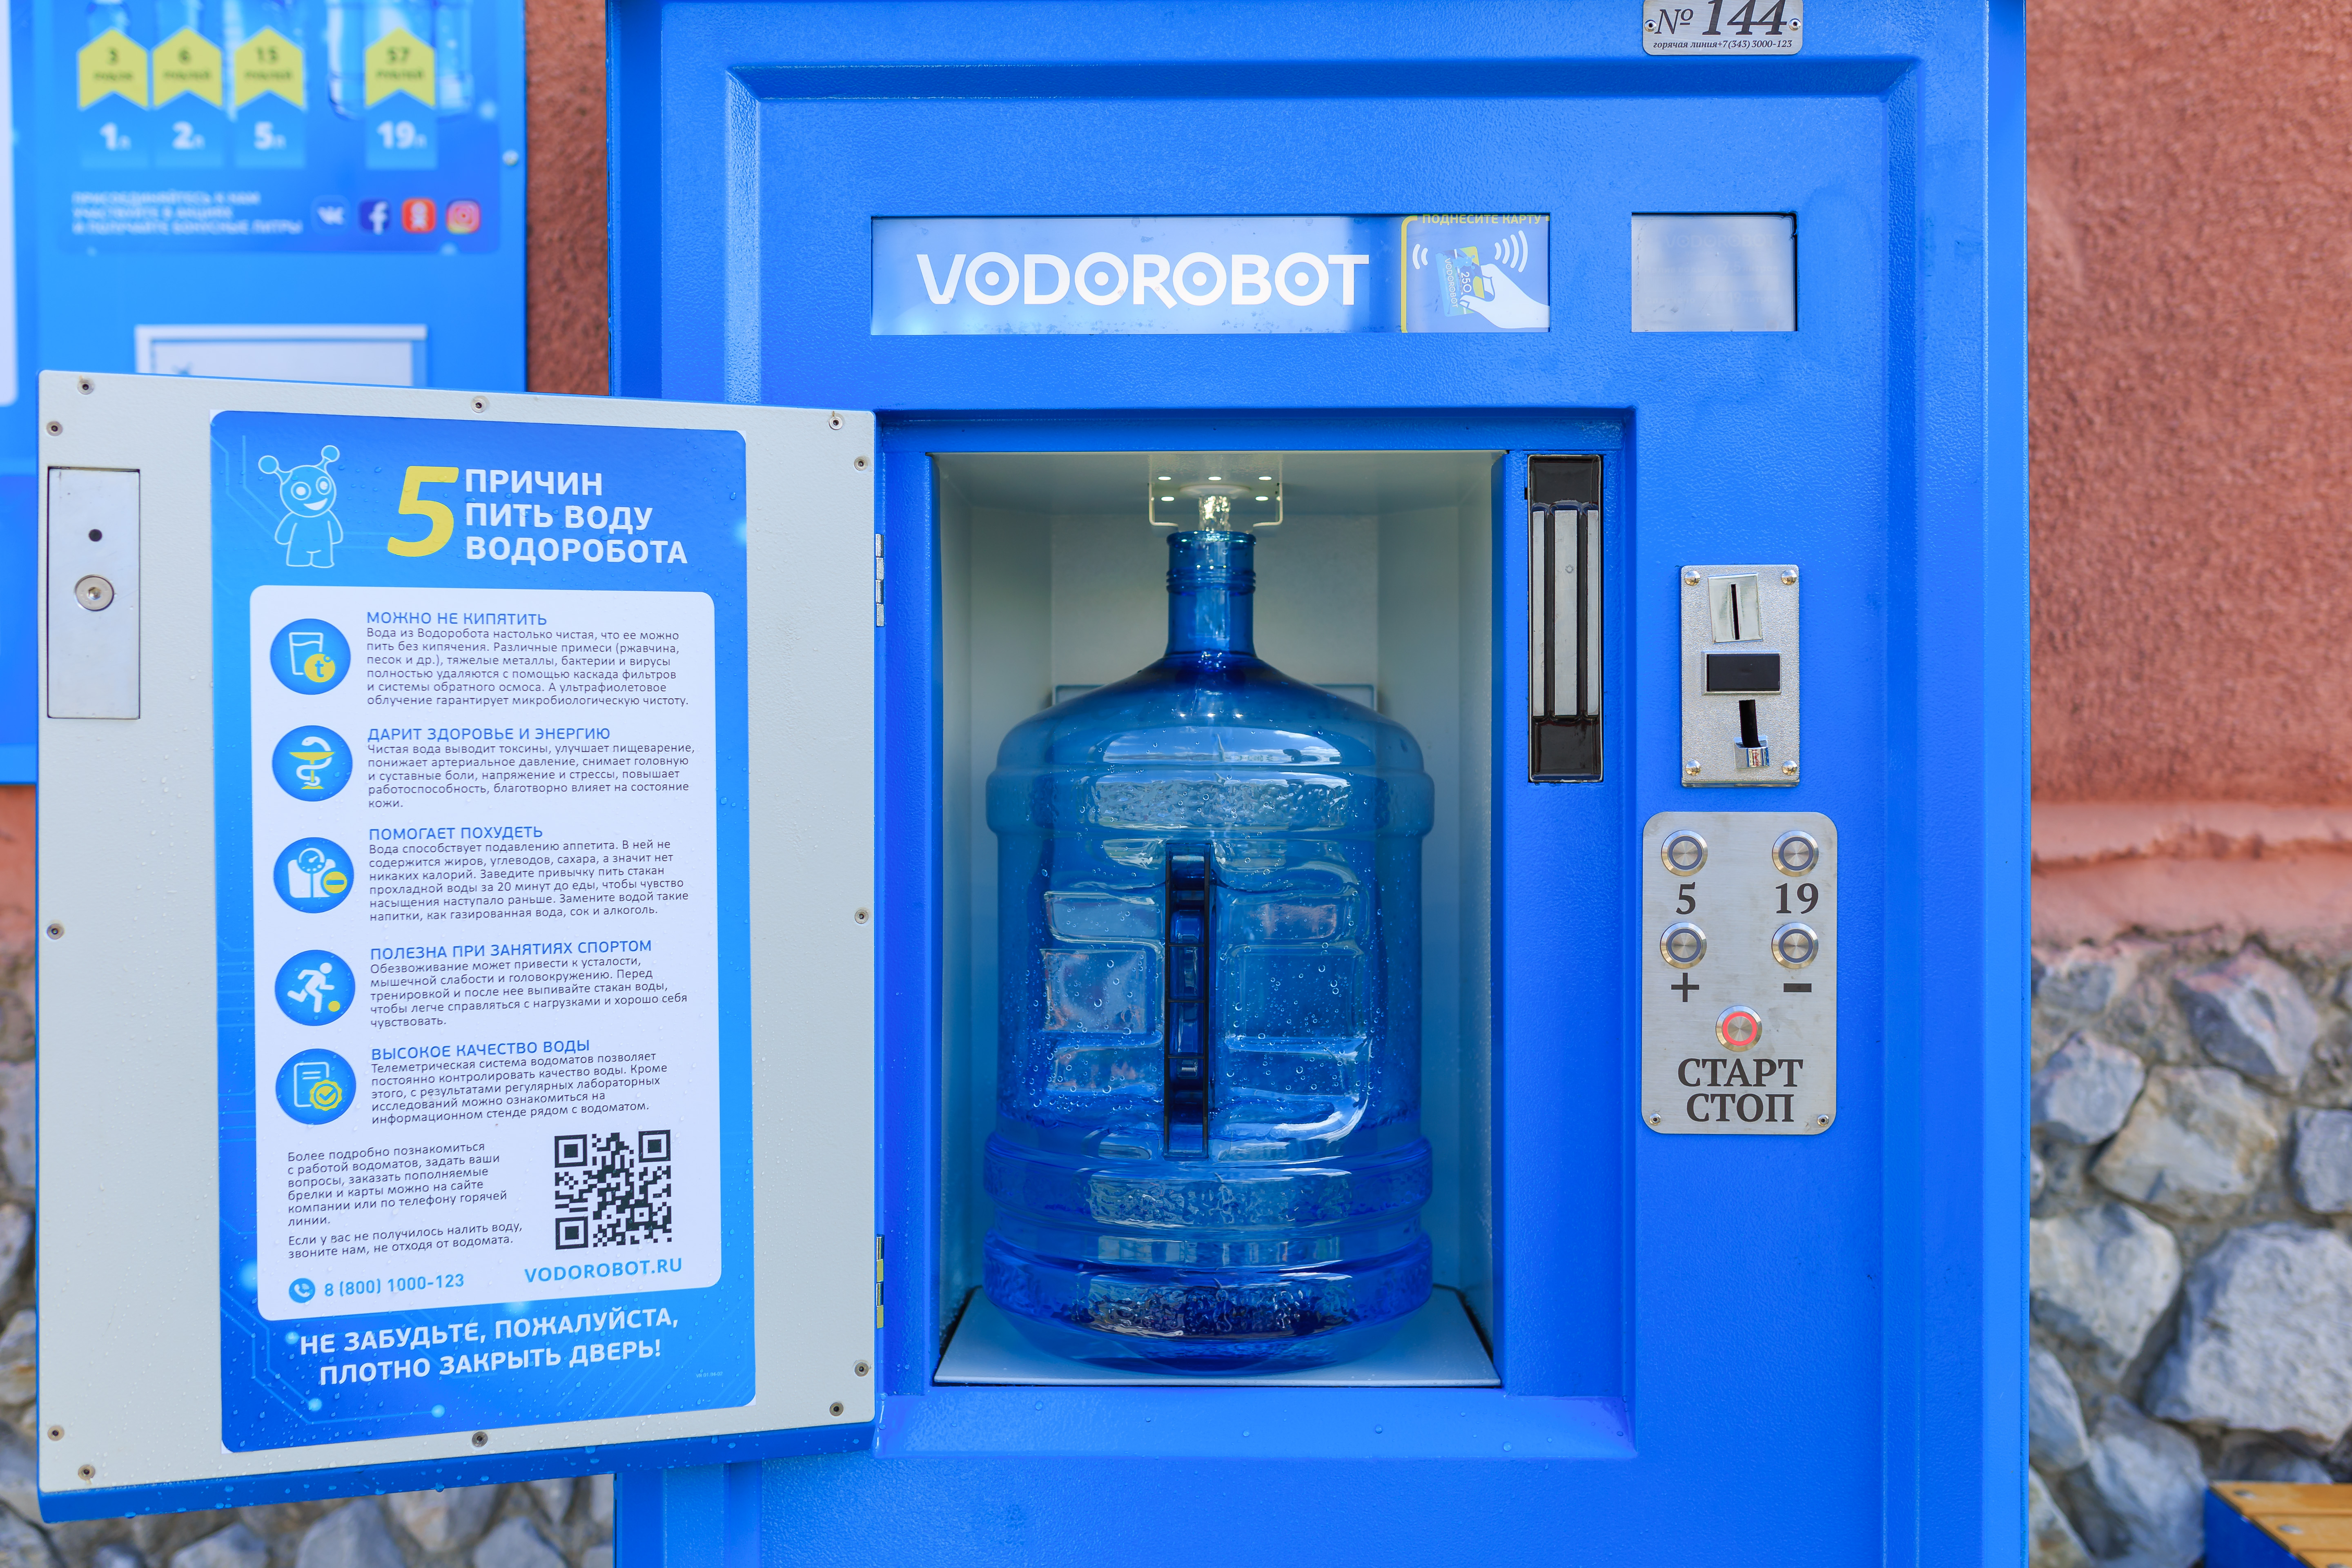 Очищенная вода автомат. Автомат питьевой воды. Автомат с бутилированной водой. Водоробот автомат. Аппарат для питьевой воды на улице.